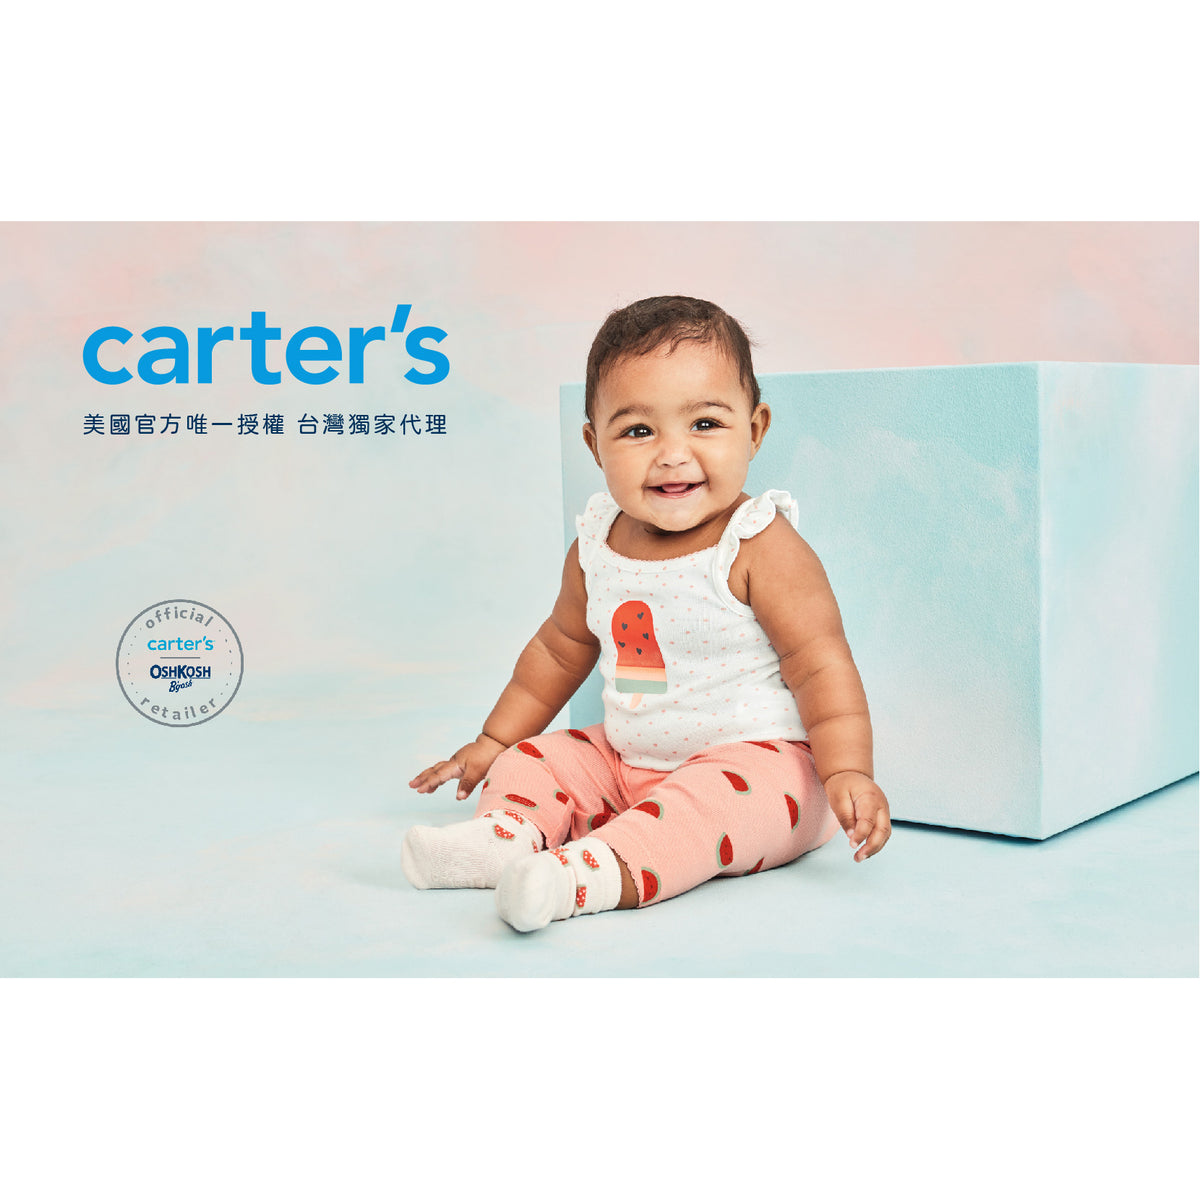 Carter's 可愛粉白小花風3件組套裝(3M-12M)